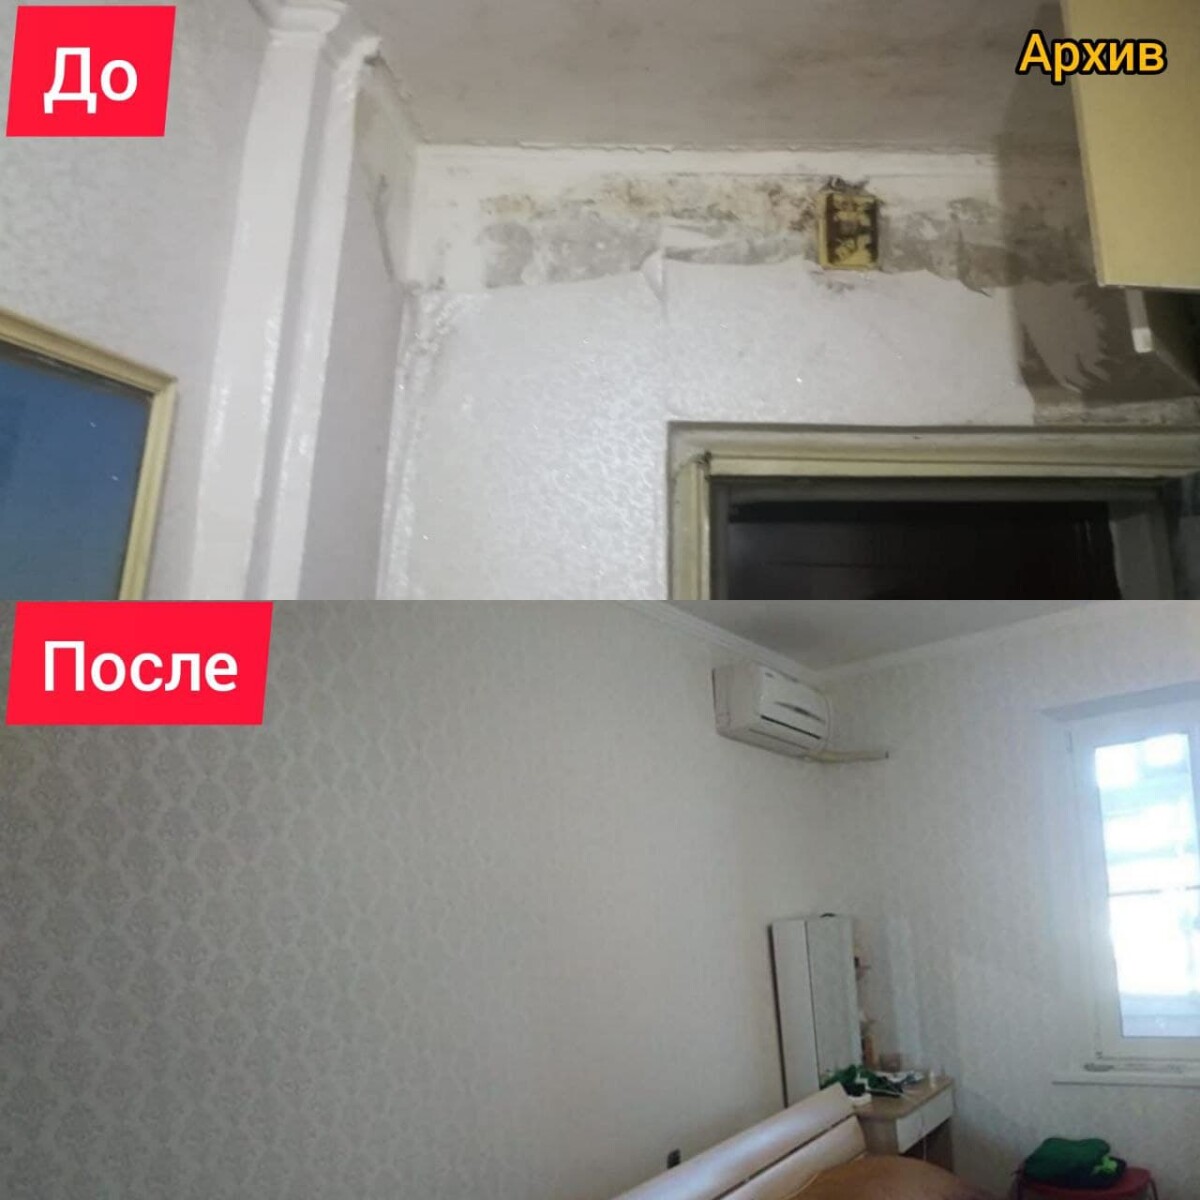 В адрес Дмитрия Трапезникова поступила благодарность от элистинской семьи за оказанное содействие в ремонте жилья